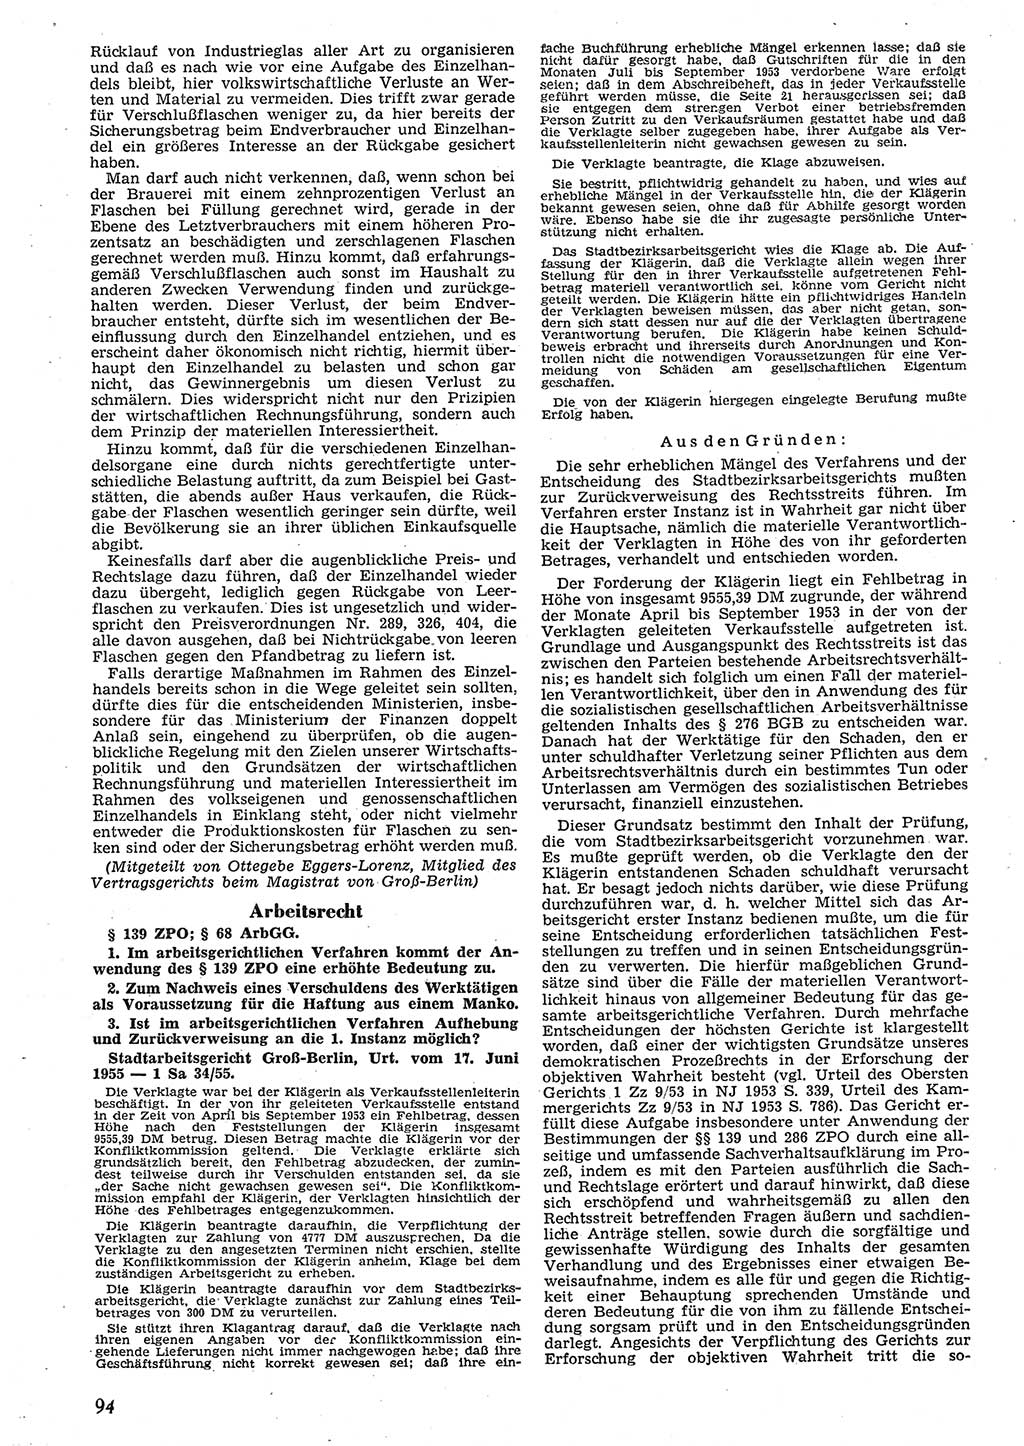 Neue Justiz (NJ), Zeitschrift für Recht und Rechtswissenschaft [Deutsche Demokratische Republik (DDR)], 10. Jahrgang 1956, Seite 94 (NJ DDR 1956, S. 94)